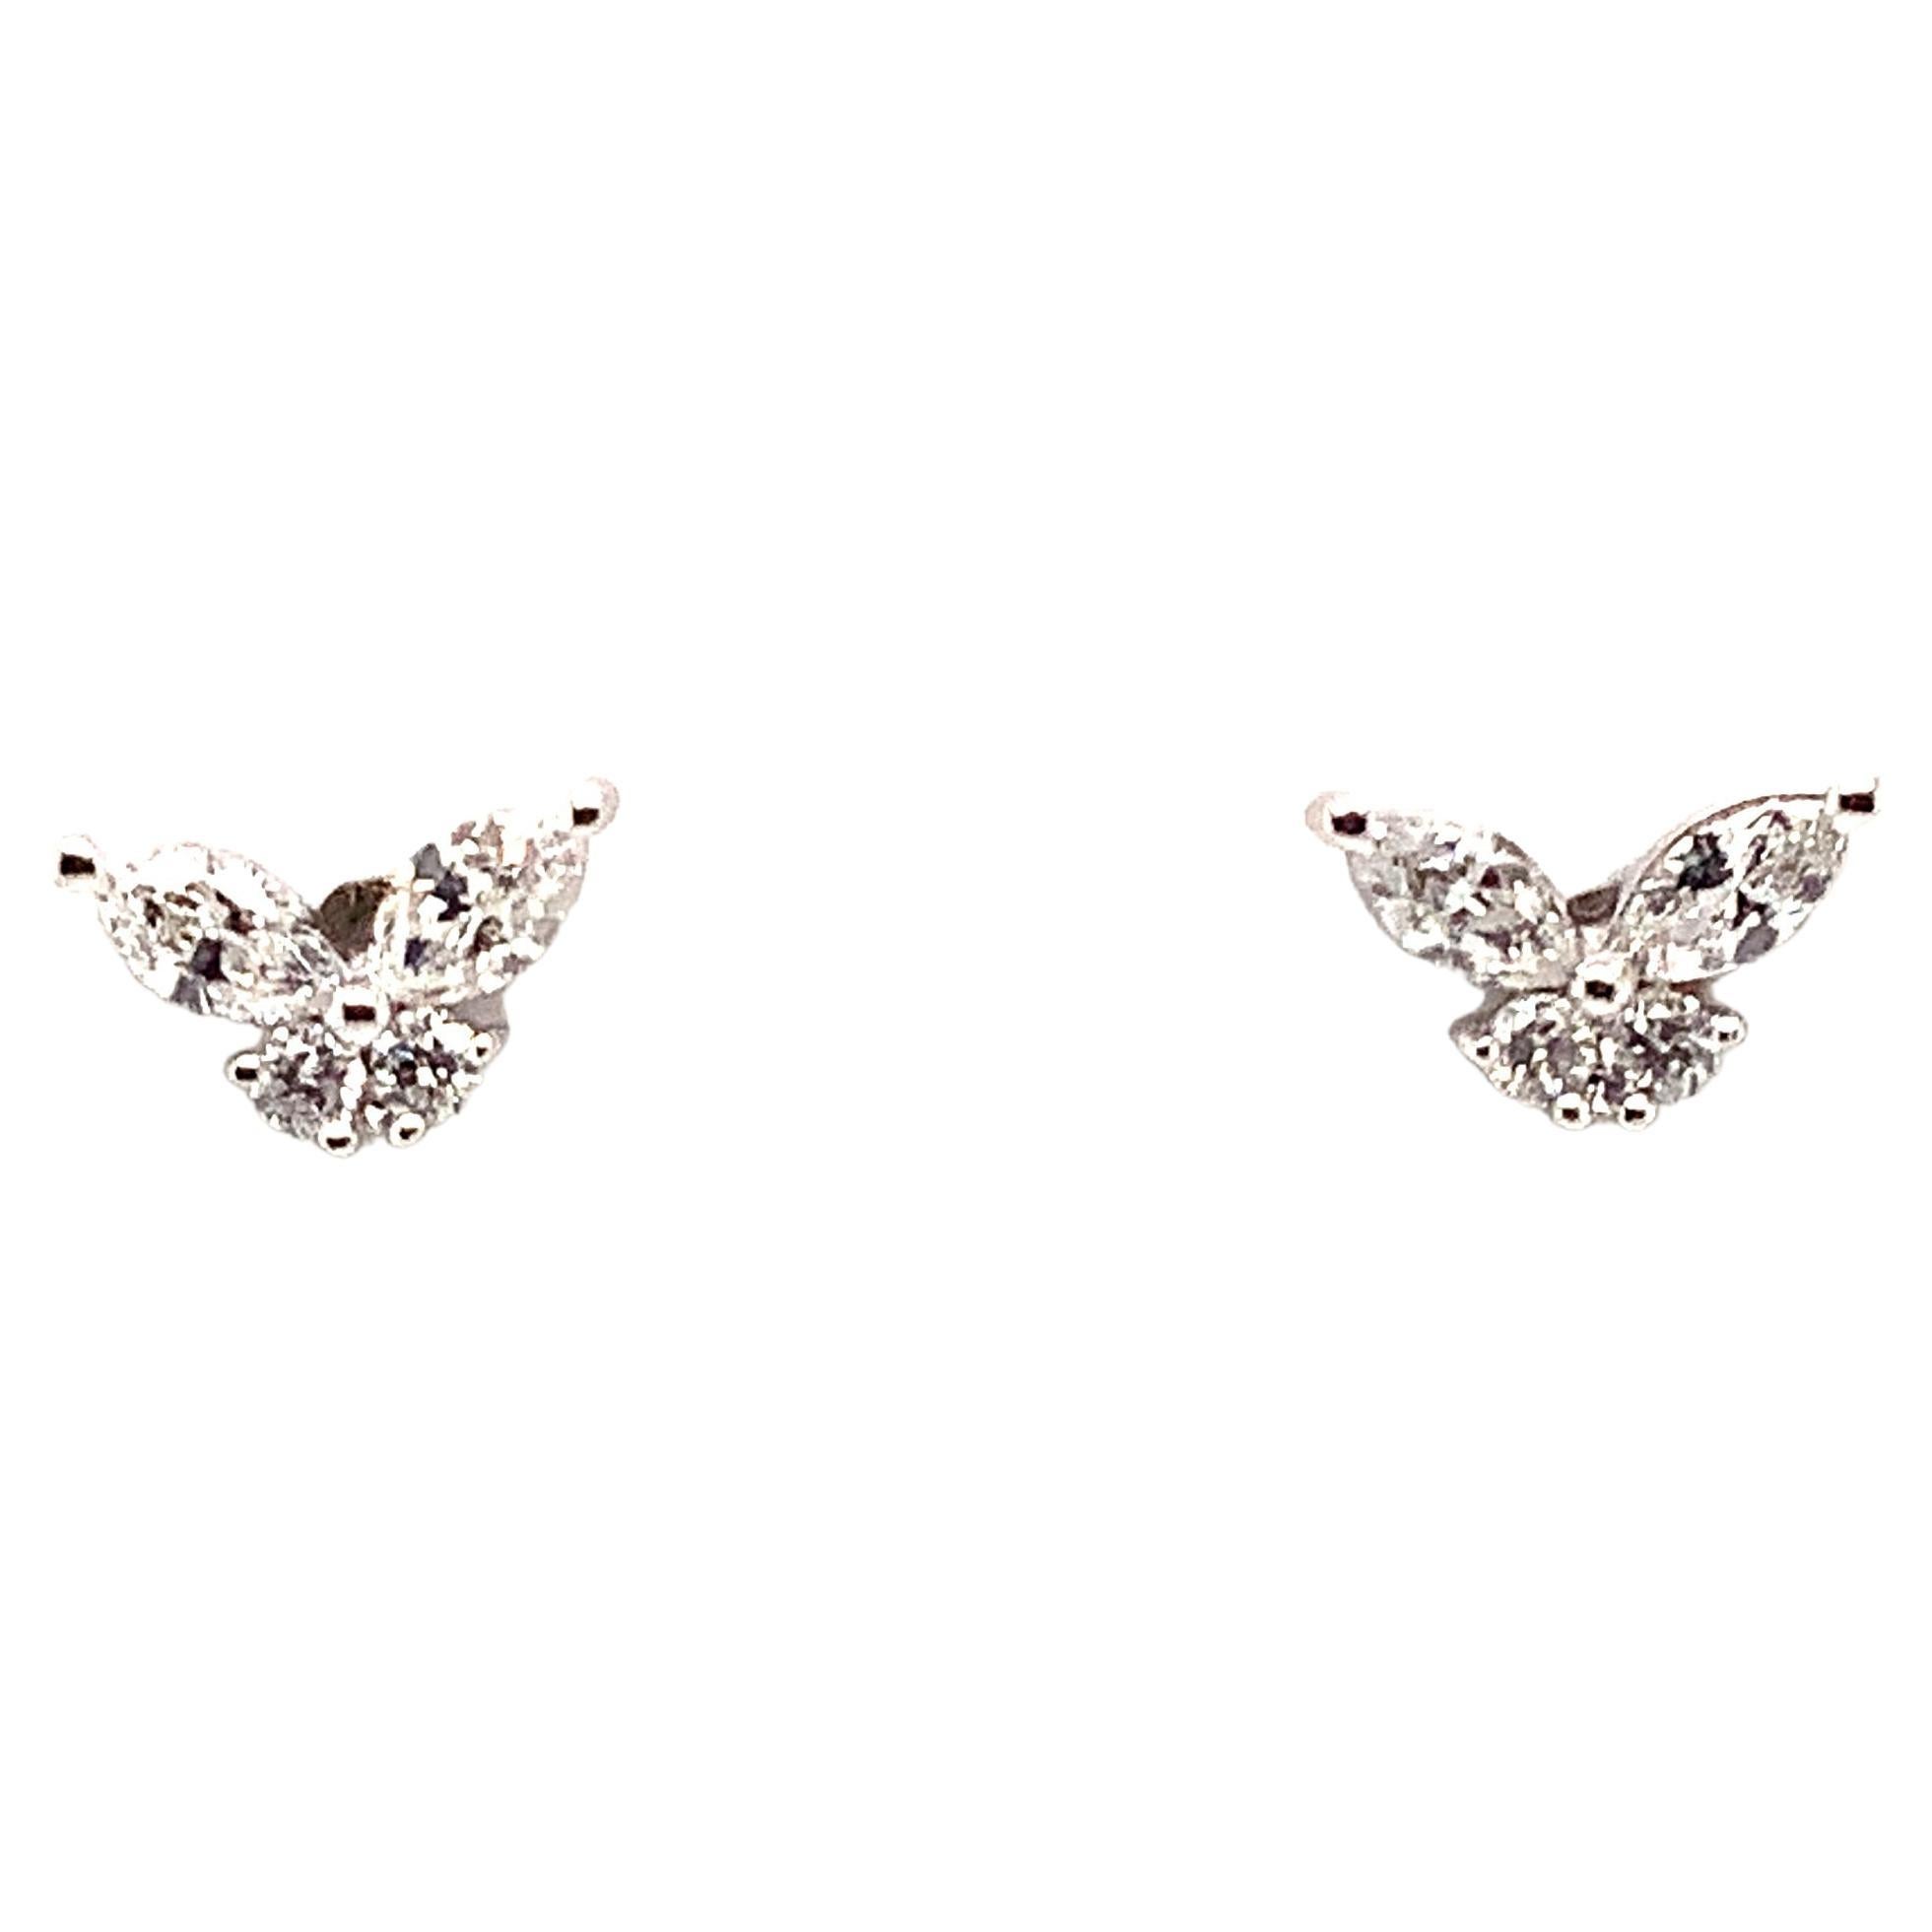 Little Butterfly Diamond Stud Earring Set in 14K White Gold